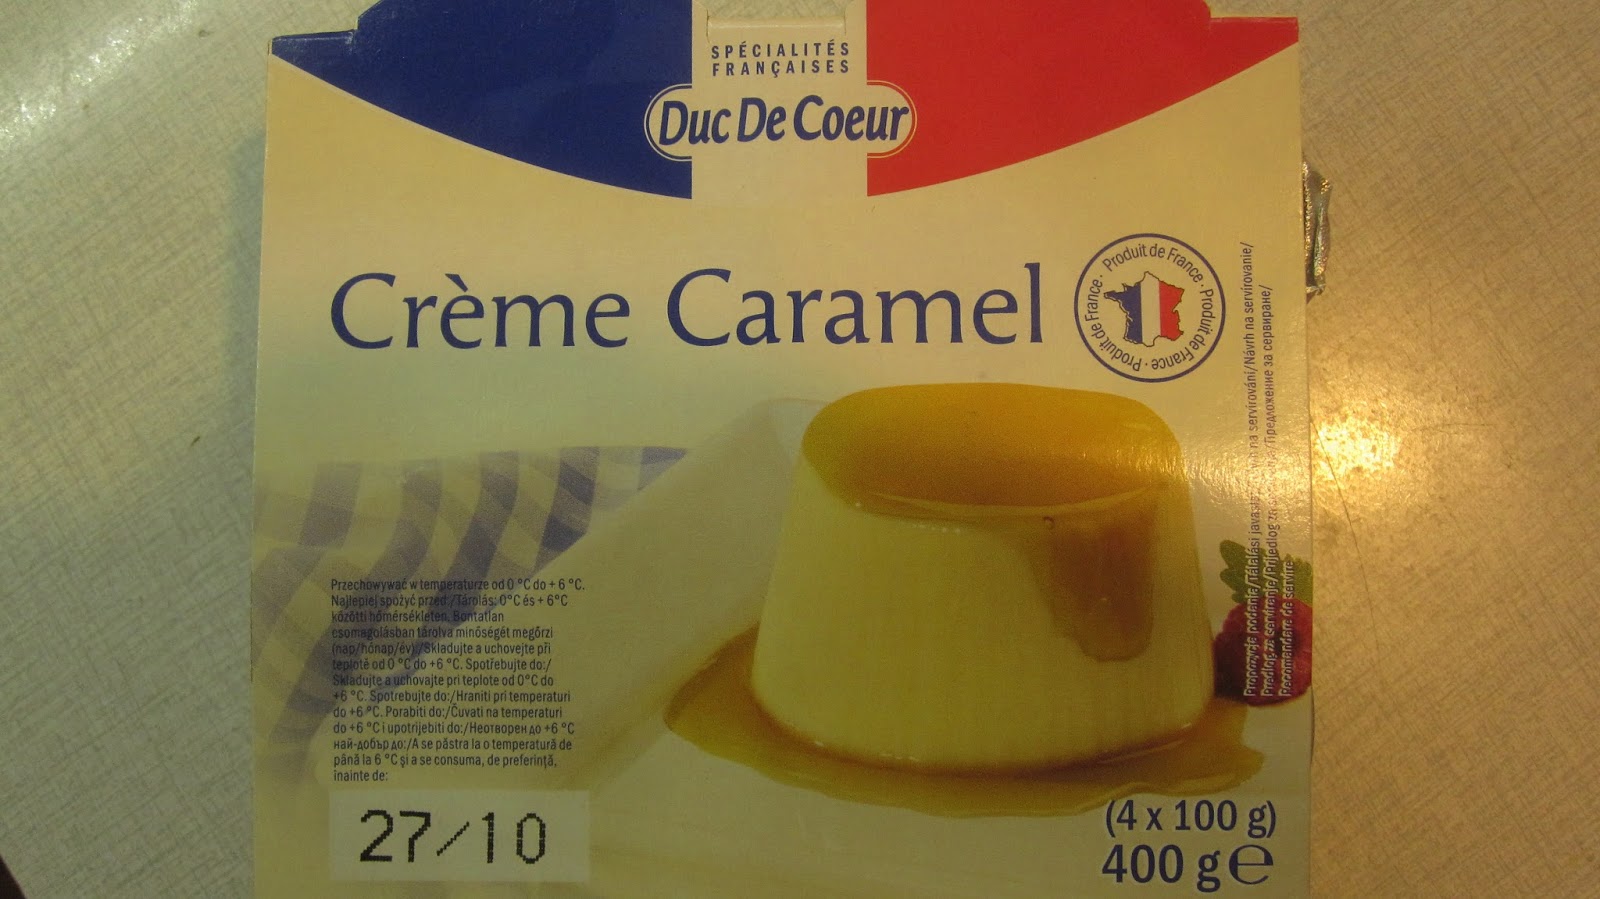 Shopping Log: Duc De Coeur - Creme Caramel